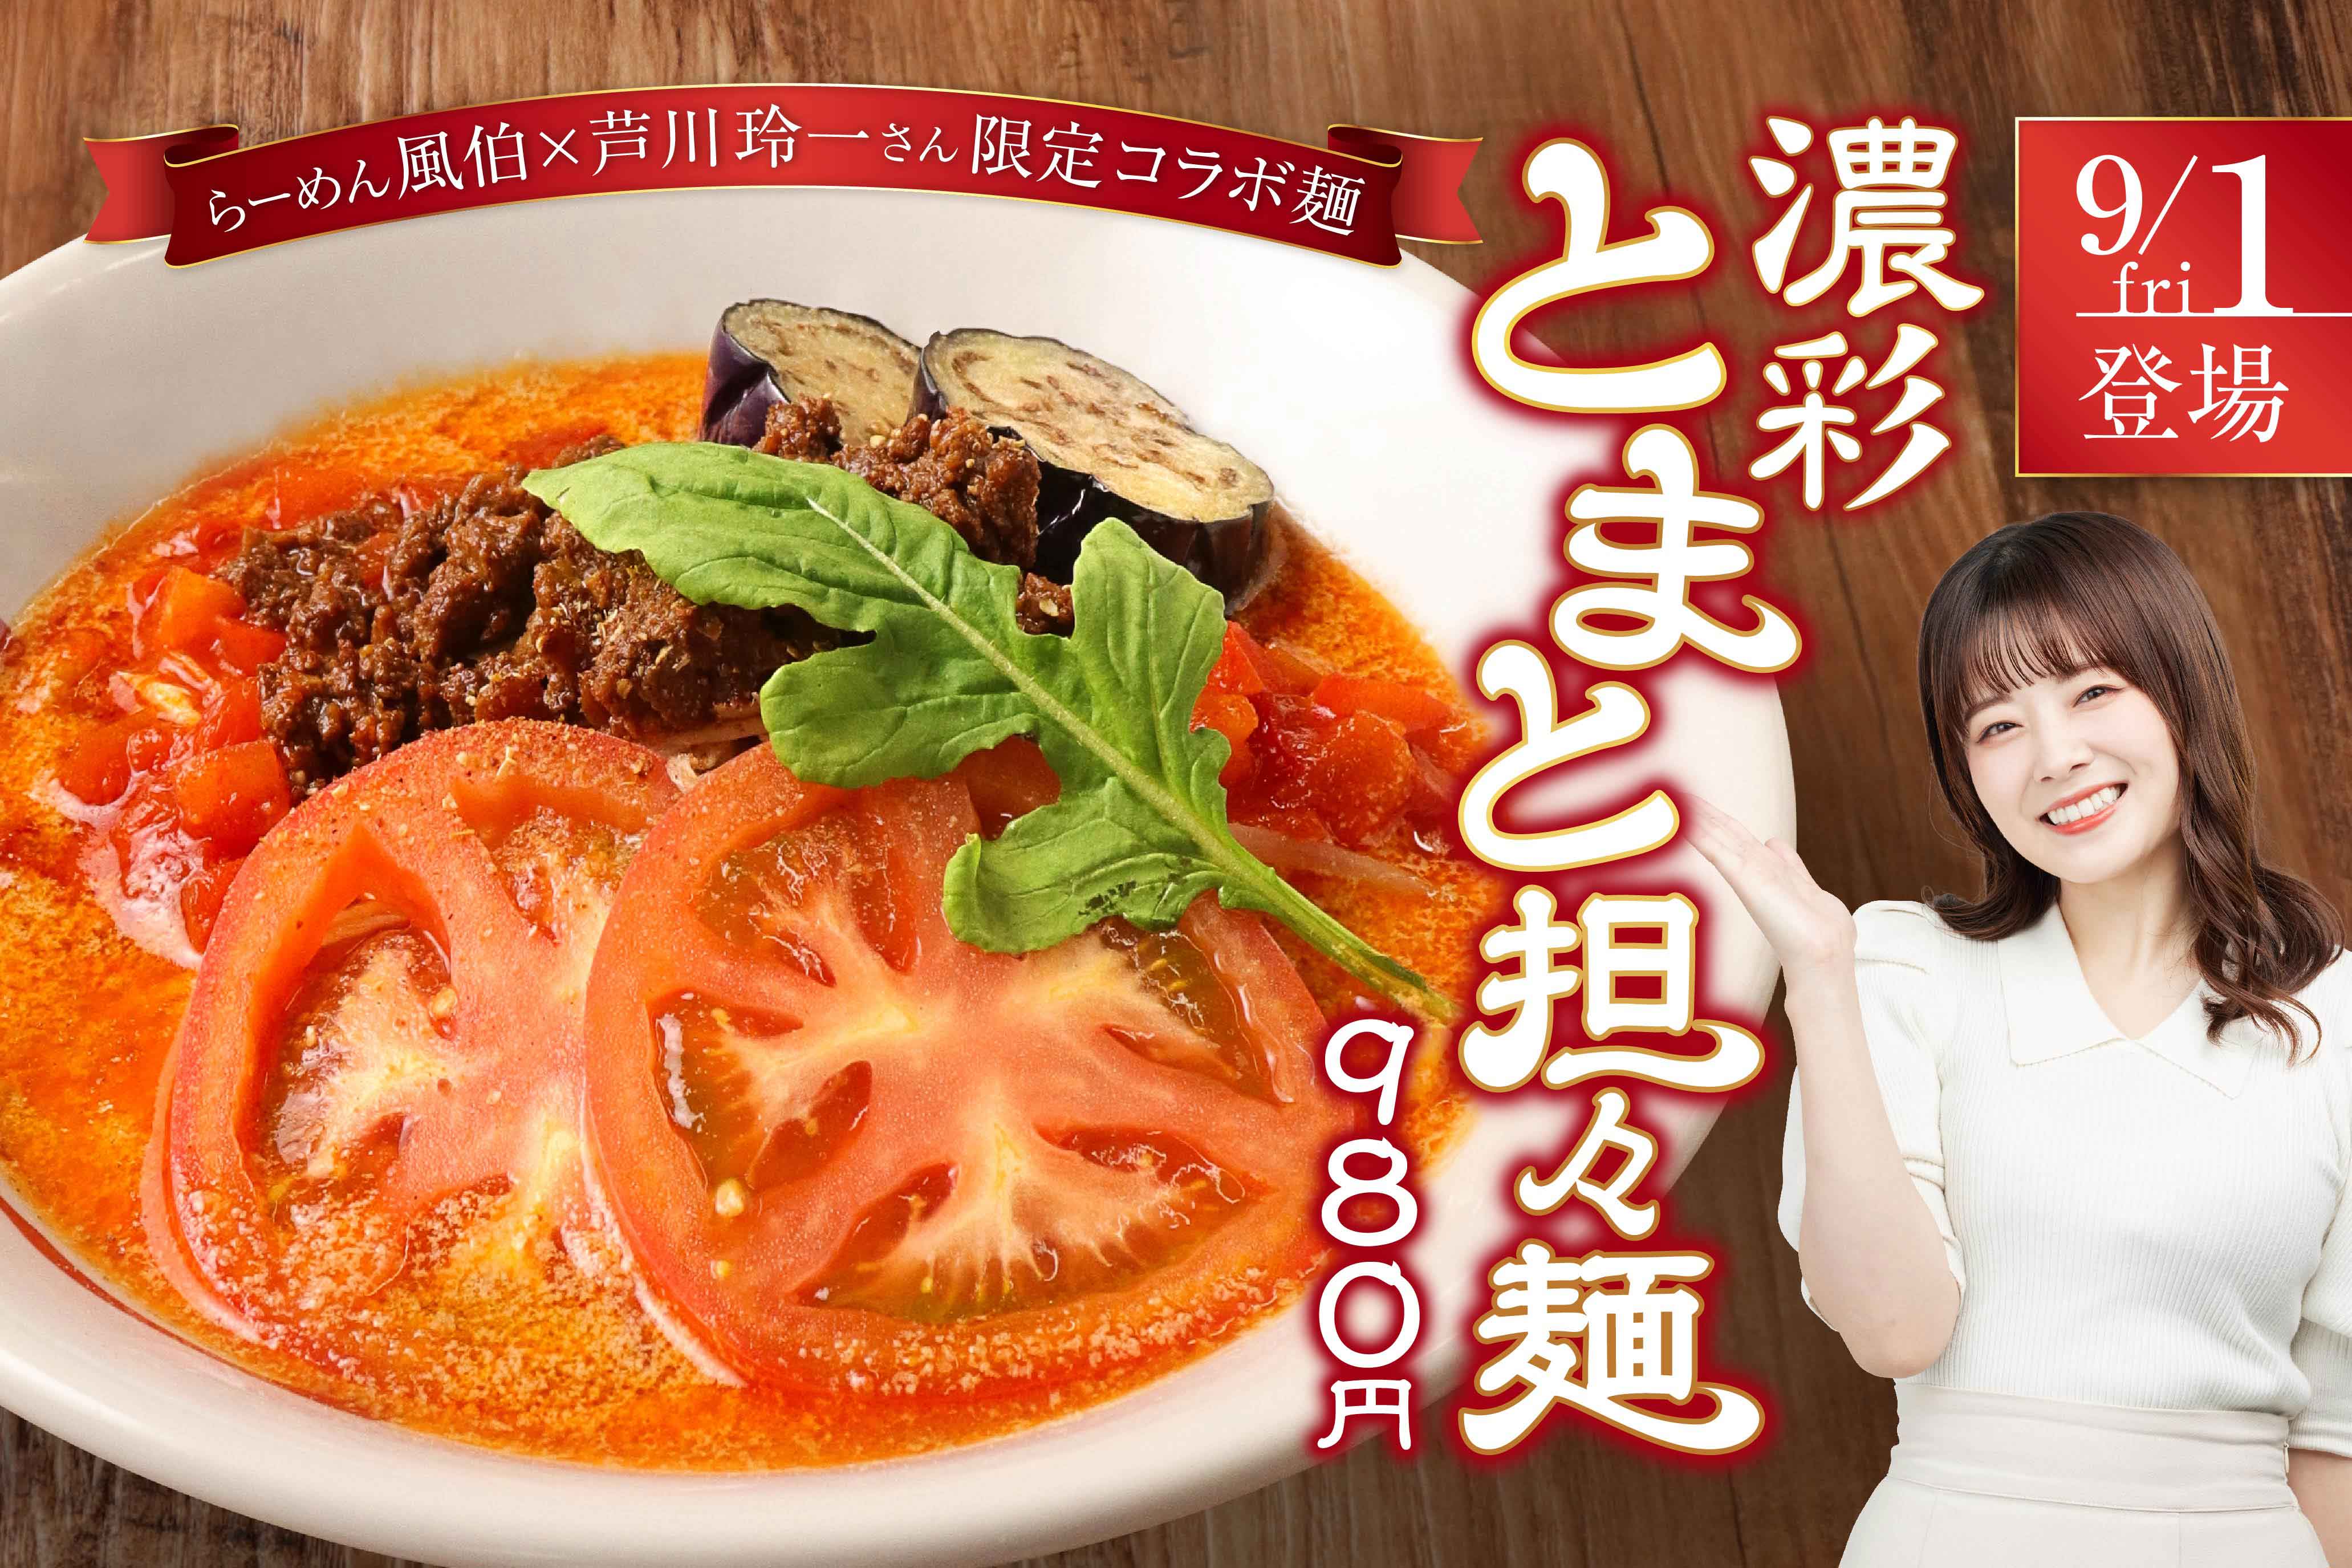 らーめん風伯×芦川玲一さん限定コラボ麺 濃彩とまと担々麺